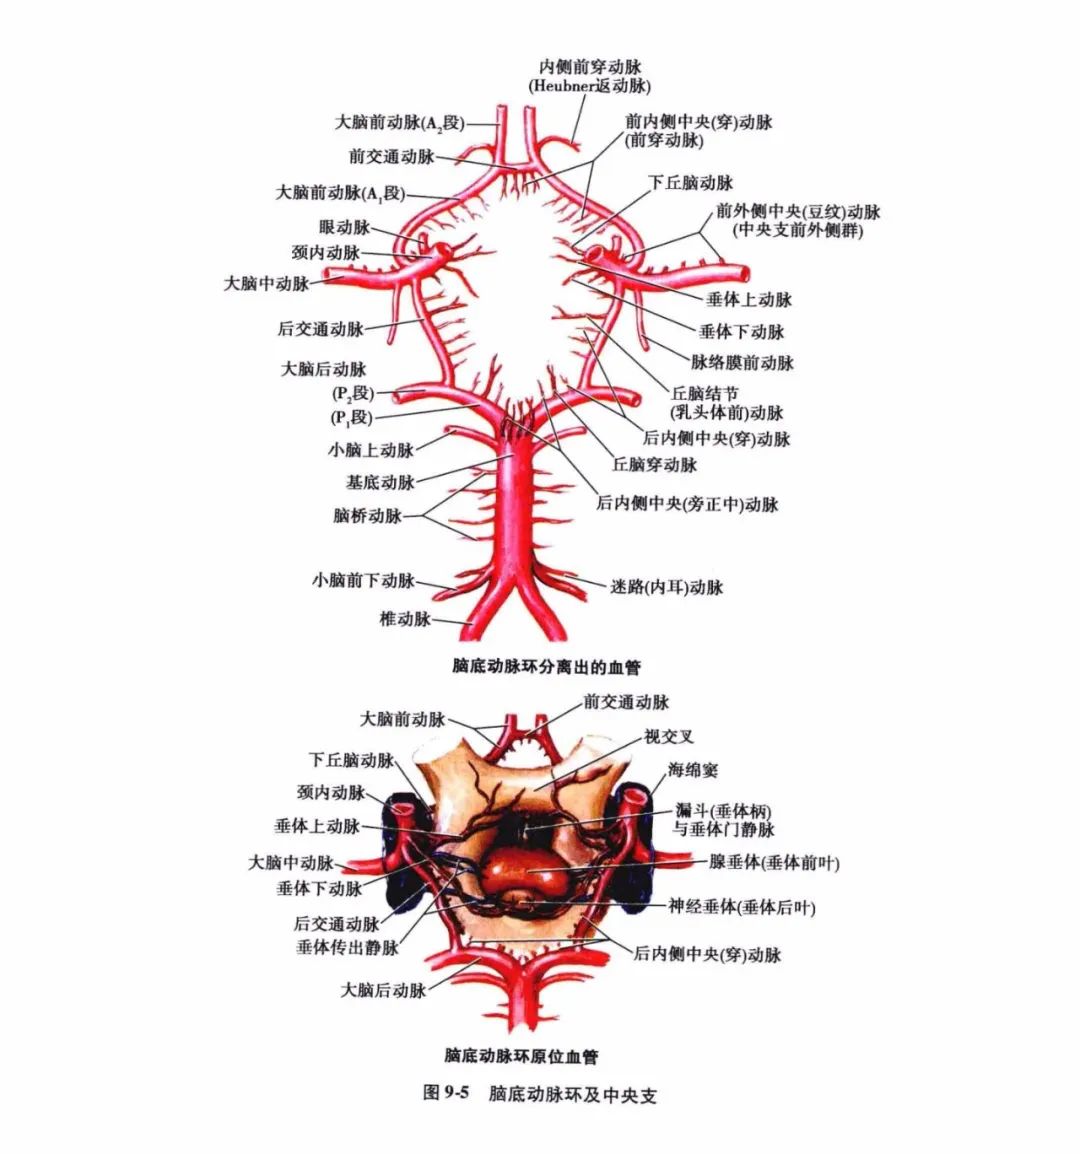 由于各皮质支之间有广泛的吻合,侧支循环较易建立,故动脉闭塞后,脑